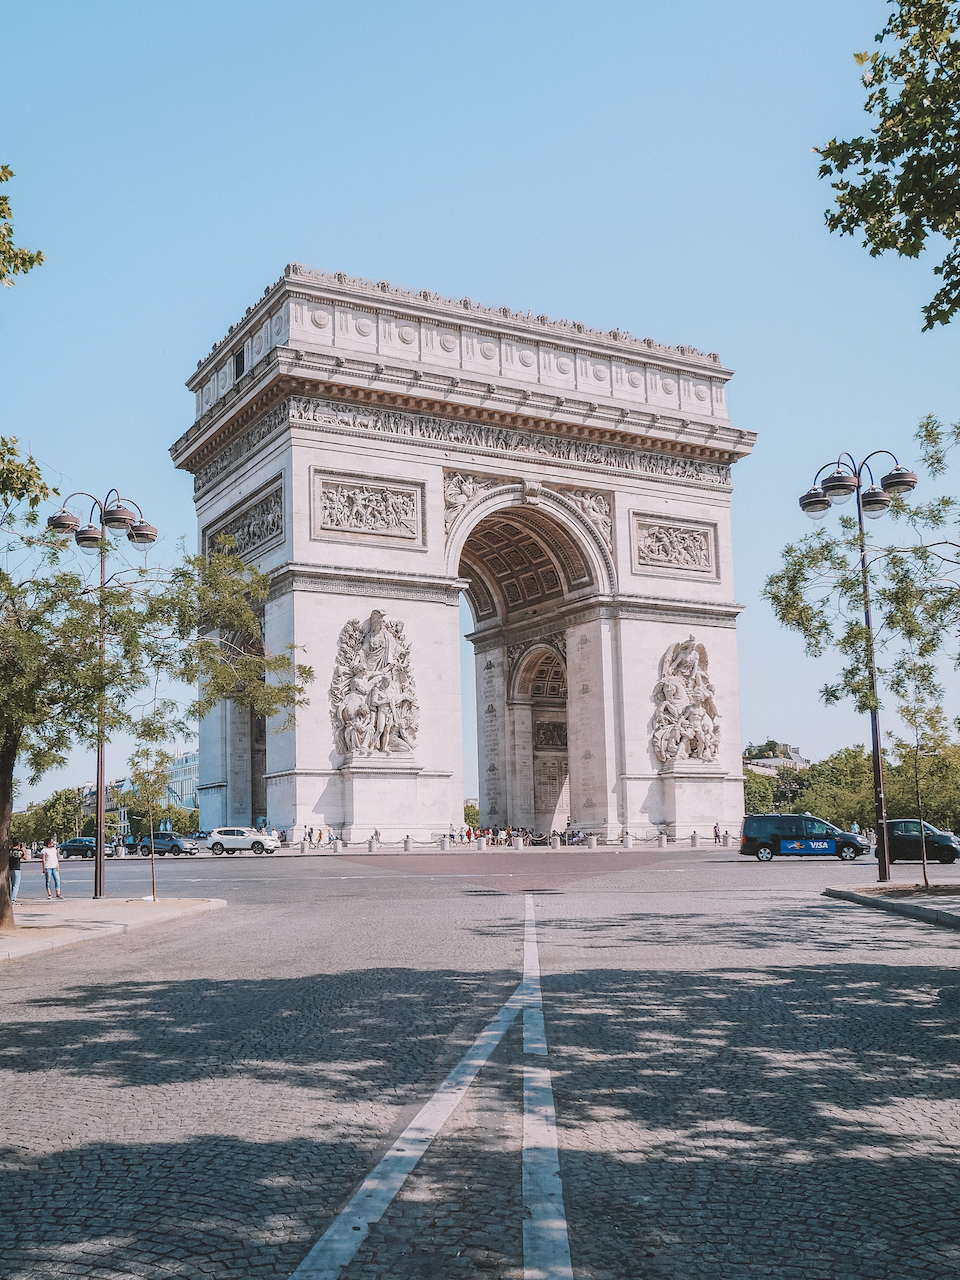 L'arc-de-triomphe sur la place Charles-de-Gaulle - Paris - France